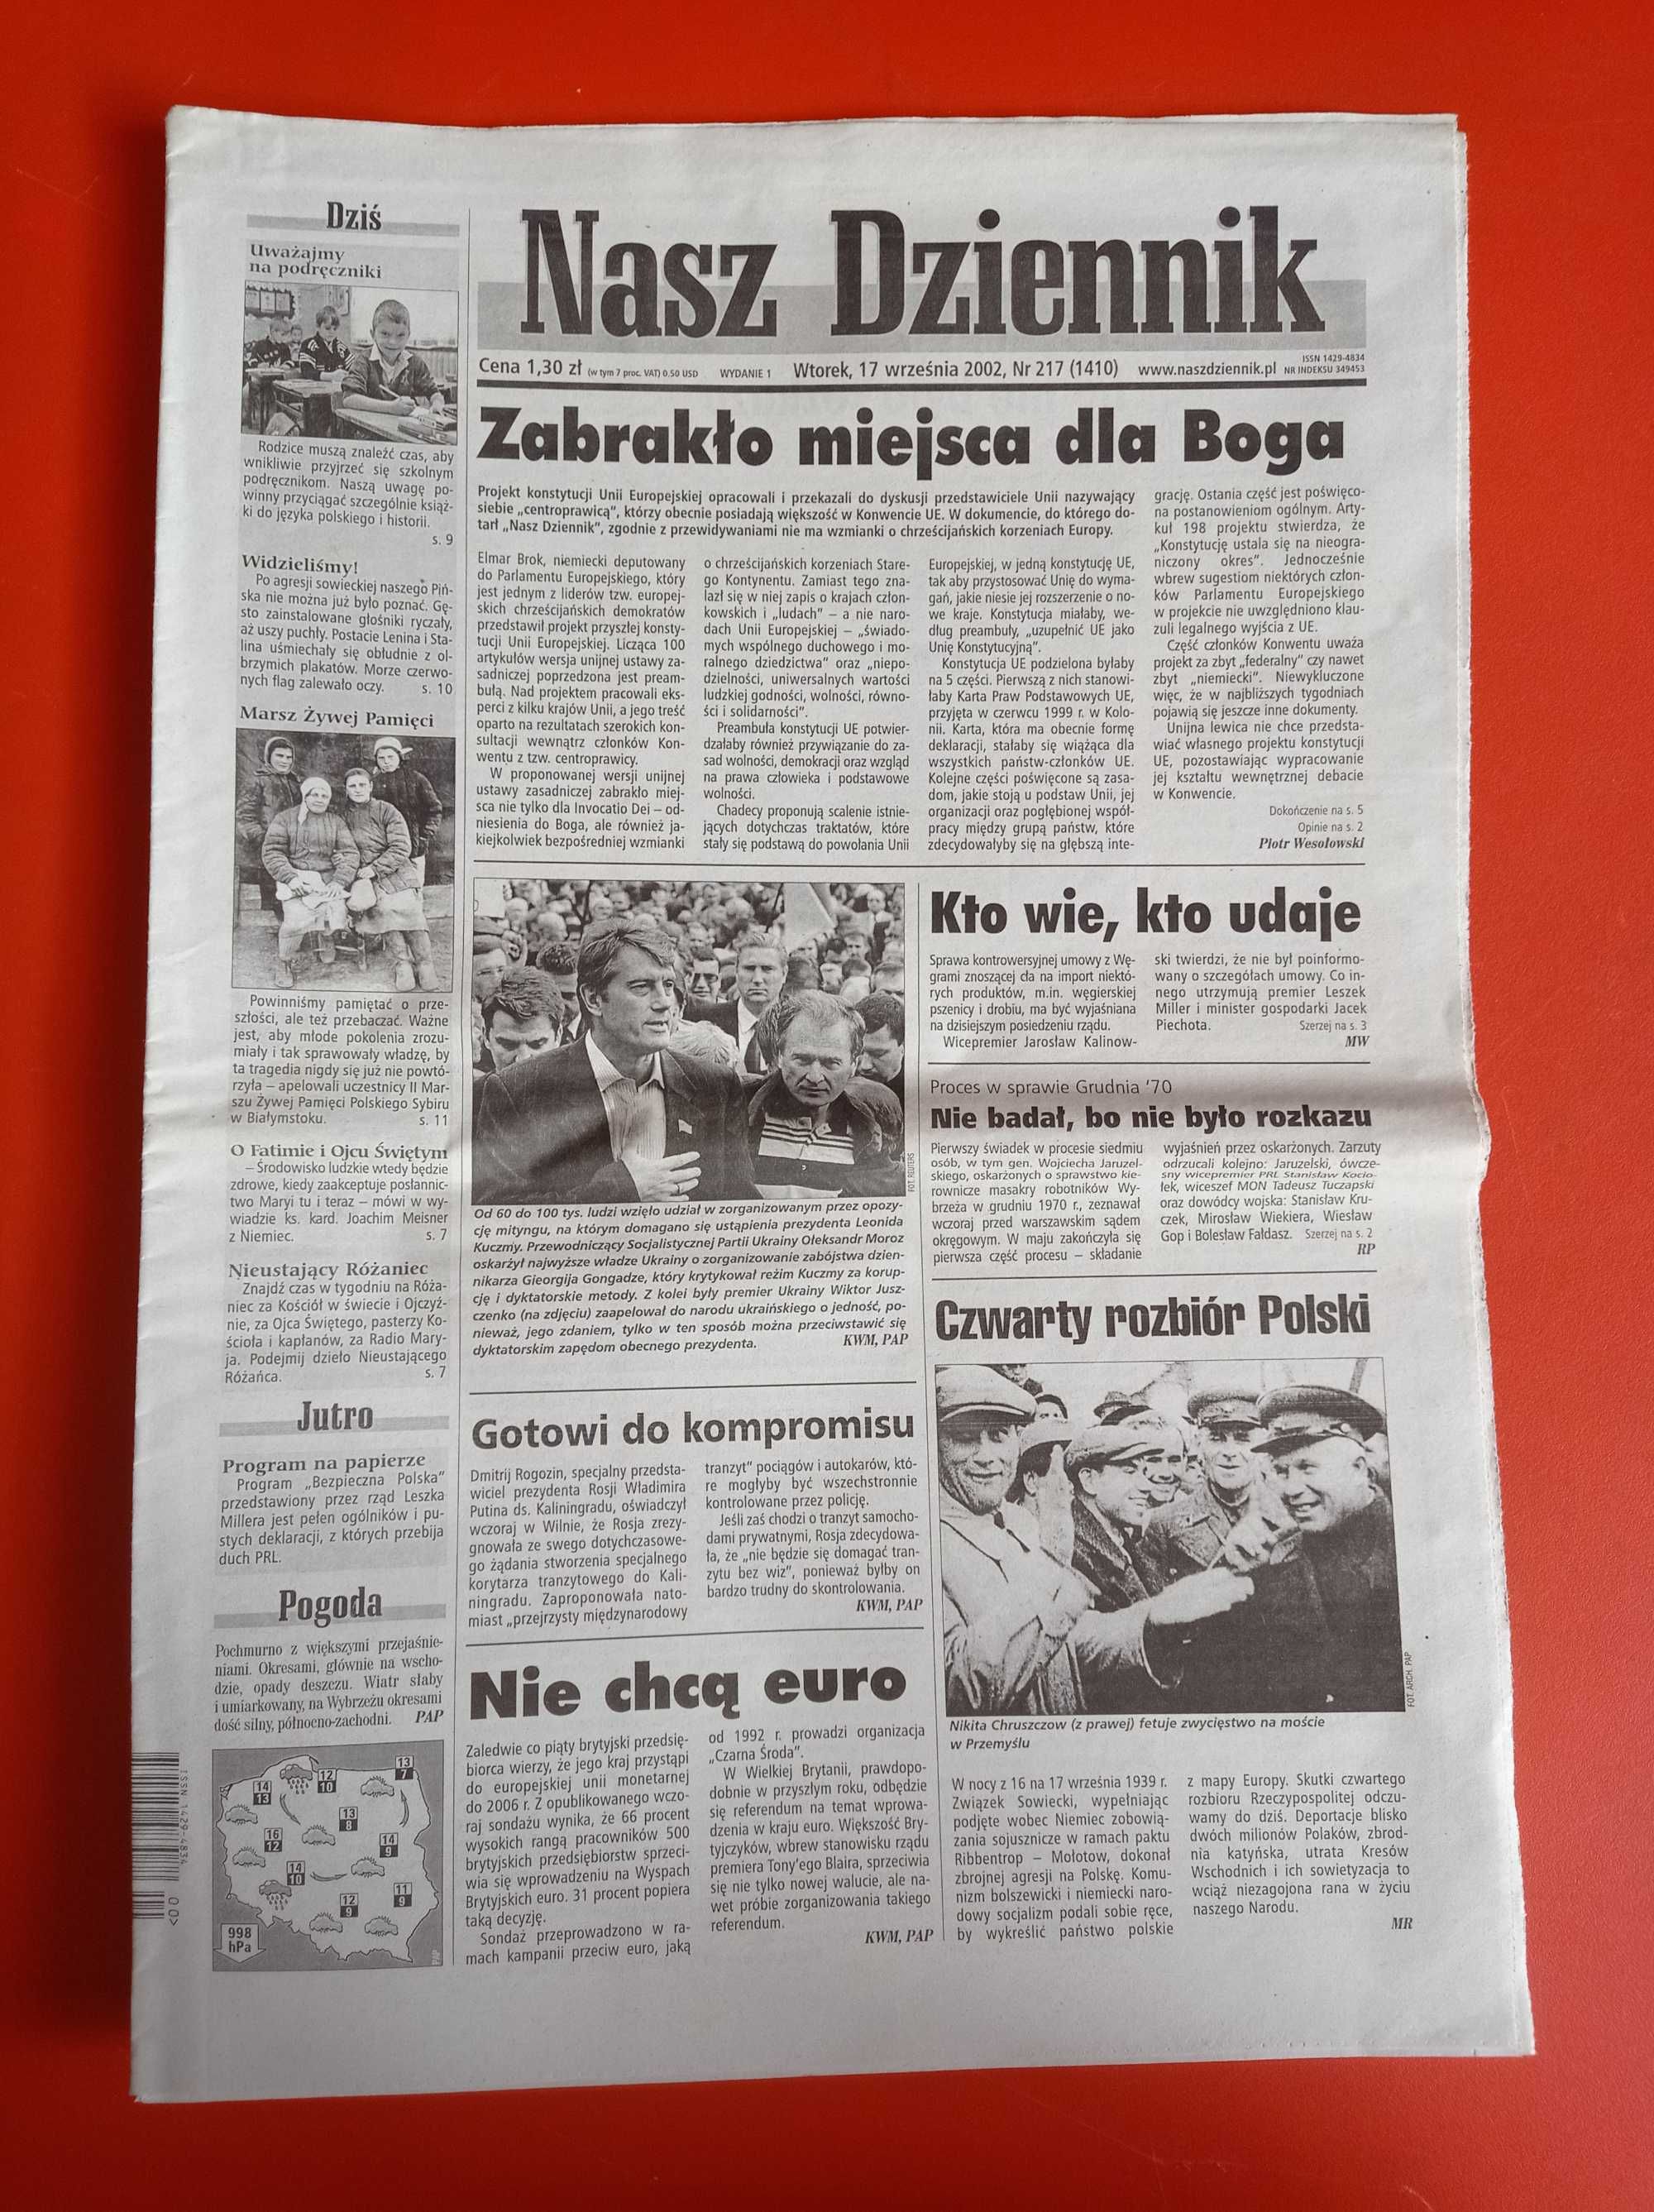 Nasz Dziennik, nr 217/2002, 17 września 2002